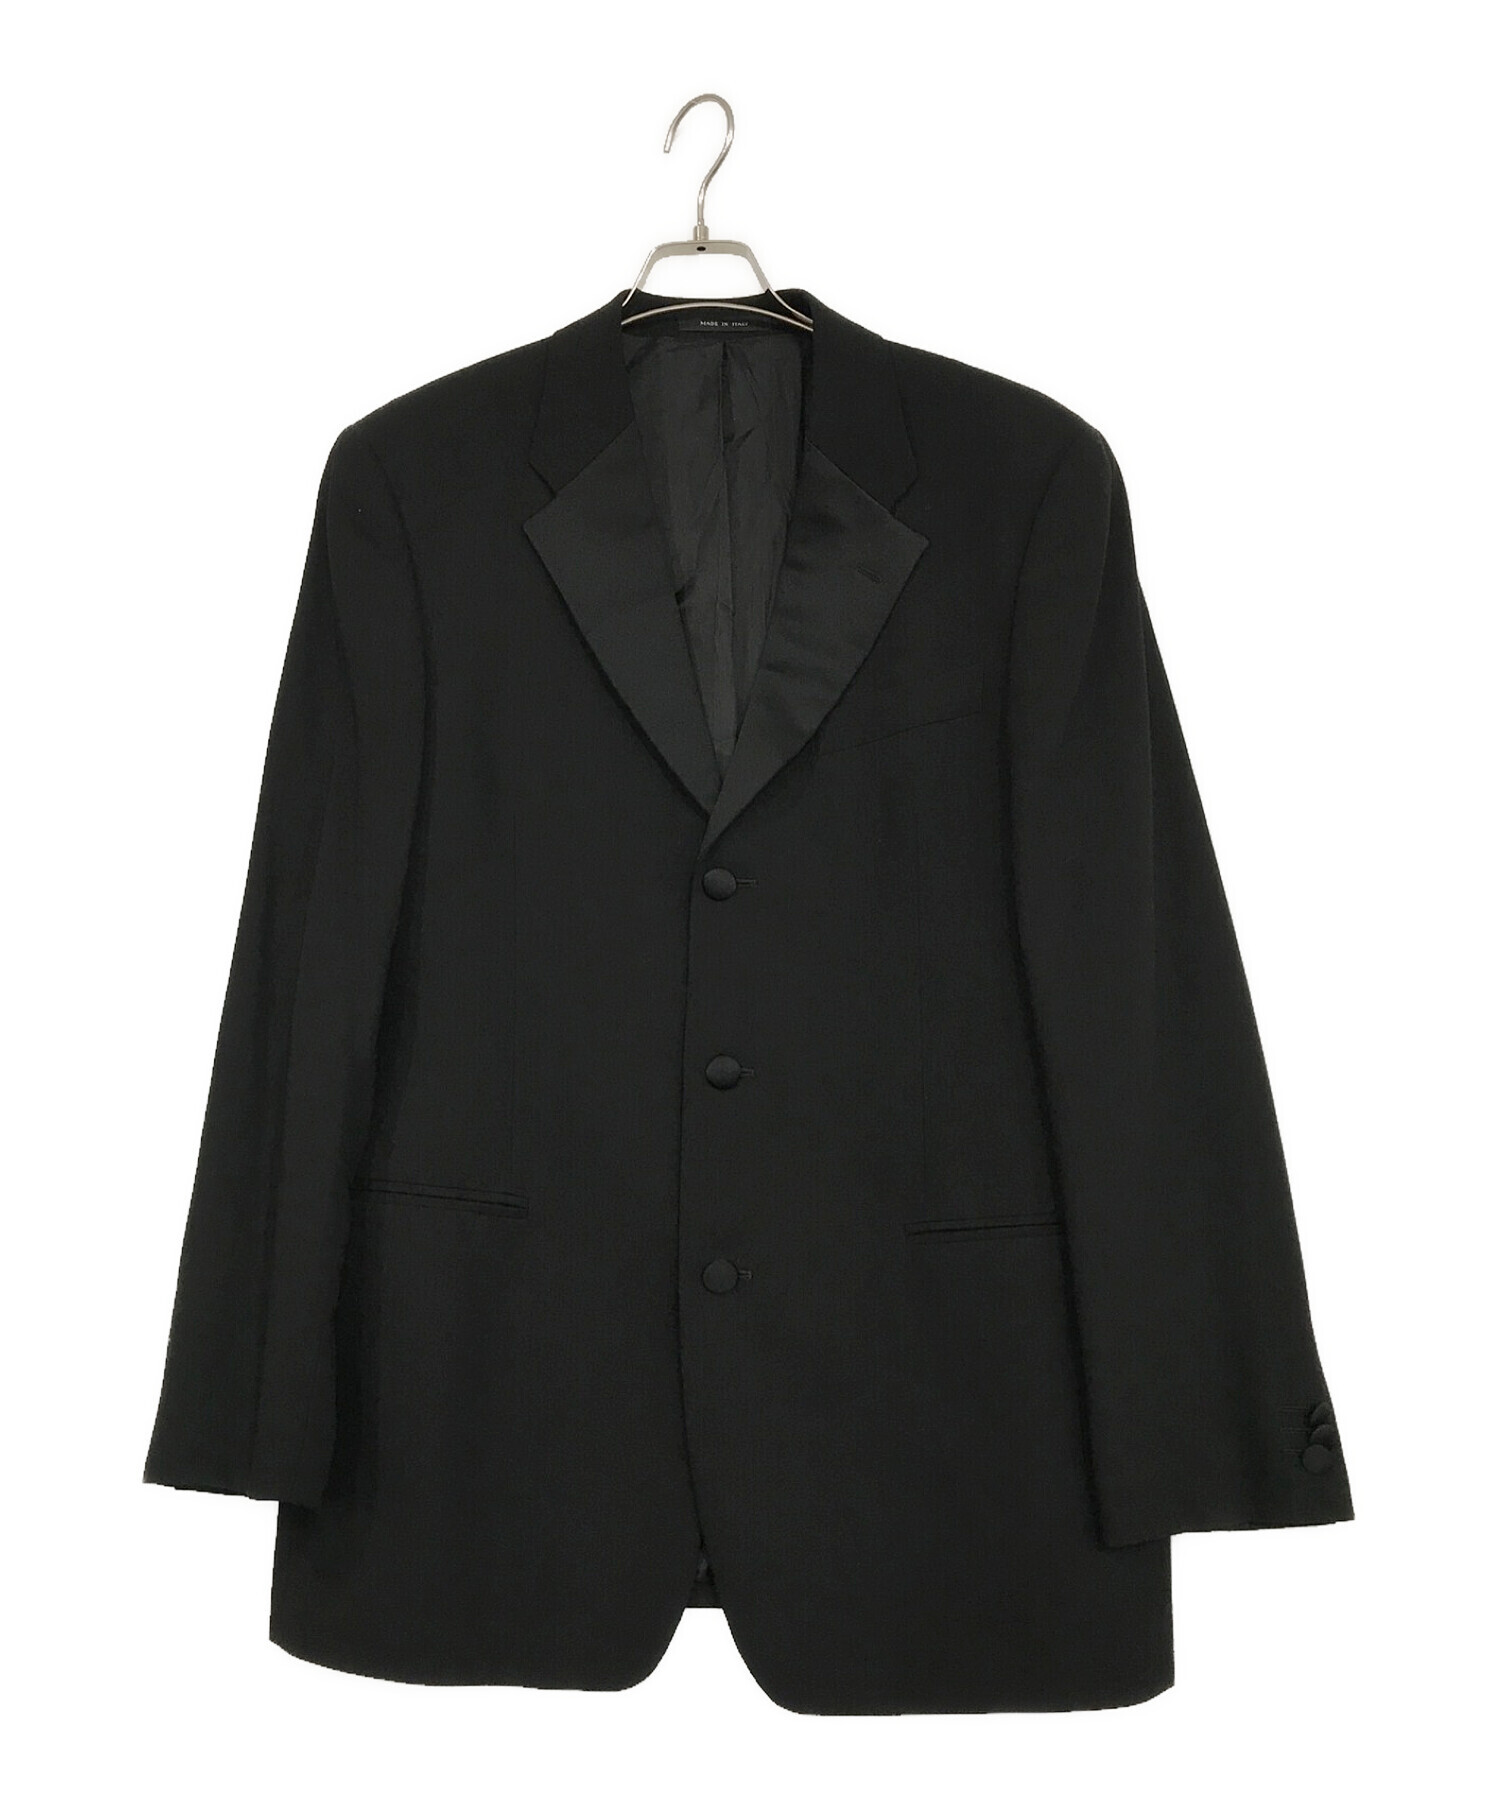 EMPORIO ARMANI (エンポリオアルマーニ) セットアップディナージャケット ブラック サイズ:46